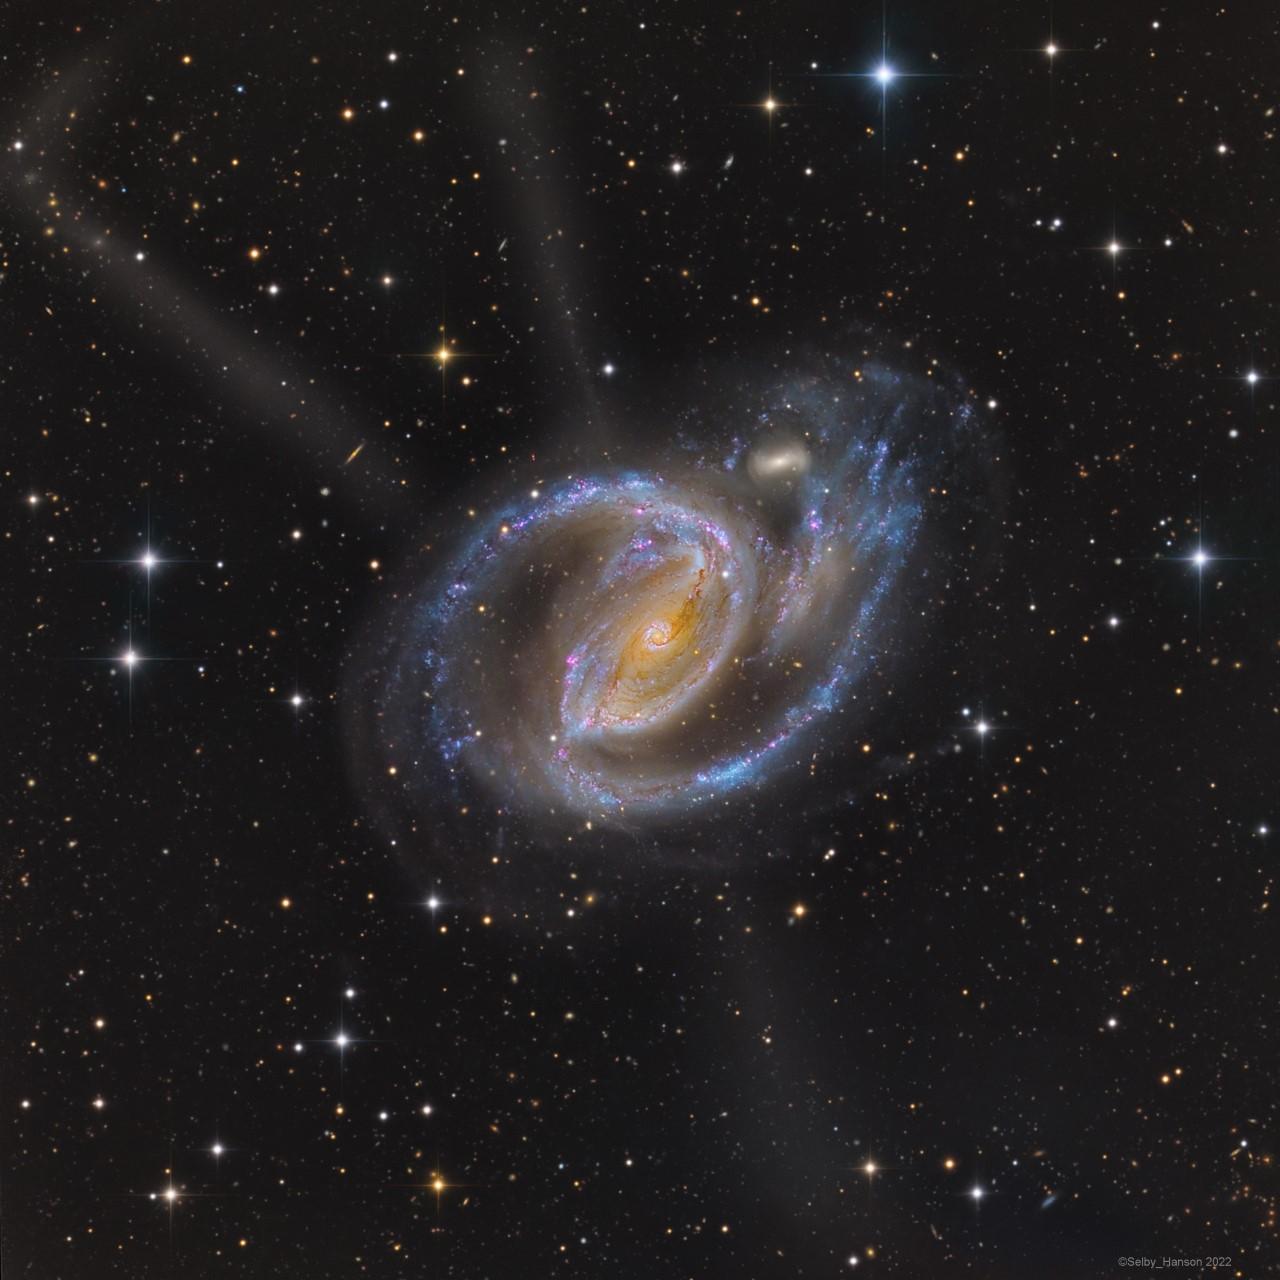 مجرّة حلزونيّة بنواتها المصفرّة  وذراعيها الحلزونيين الزرقاوين المرقّطين بالوردي. تظهر مجرّة صغيرة مصاحبة بجانبها وتدفّقات تبدو وكأنها تشع منها.